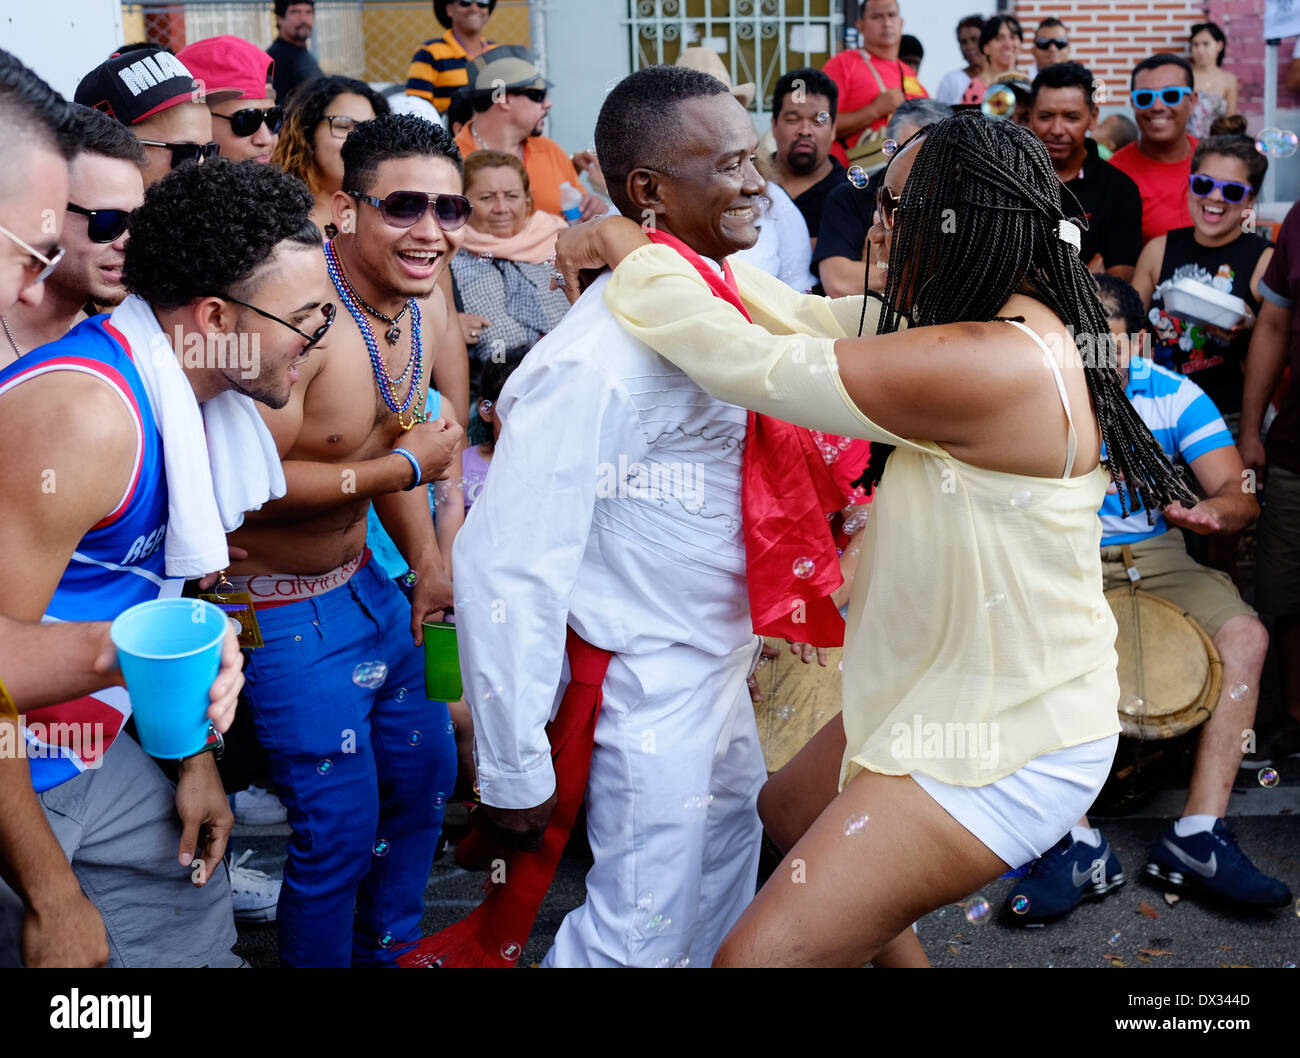 MIAMI - 9. März 2014: Leute, die tanzen in den Straßen während der 37. Calle Ocho fest, ist eine jährliche Veranstaltung, die über acht Straße in Little Havana stattfindet, mit viel Musik und Essen die größte Party der Stadt, die hispanic Erbe feiert. Stockfoto